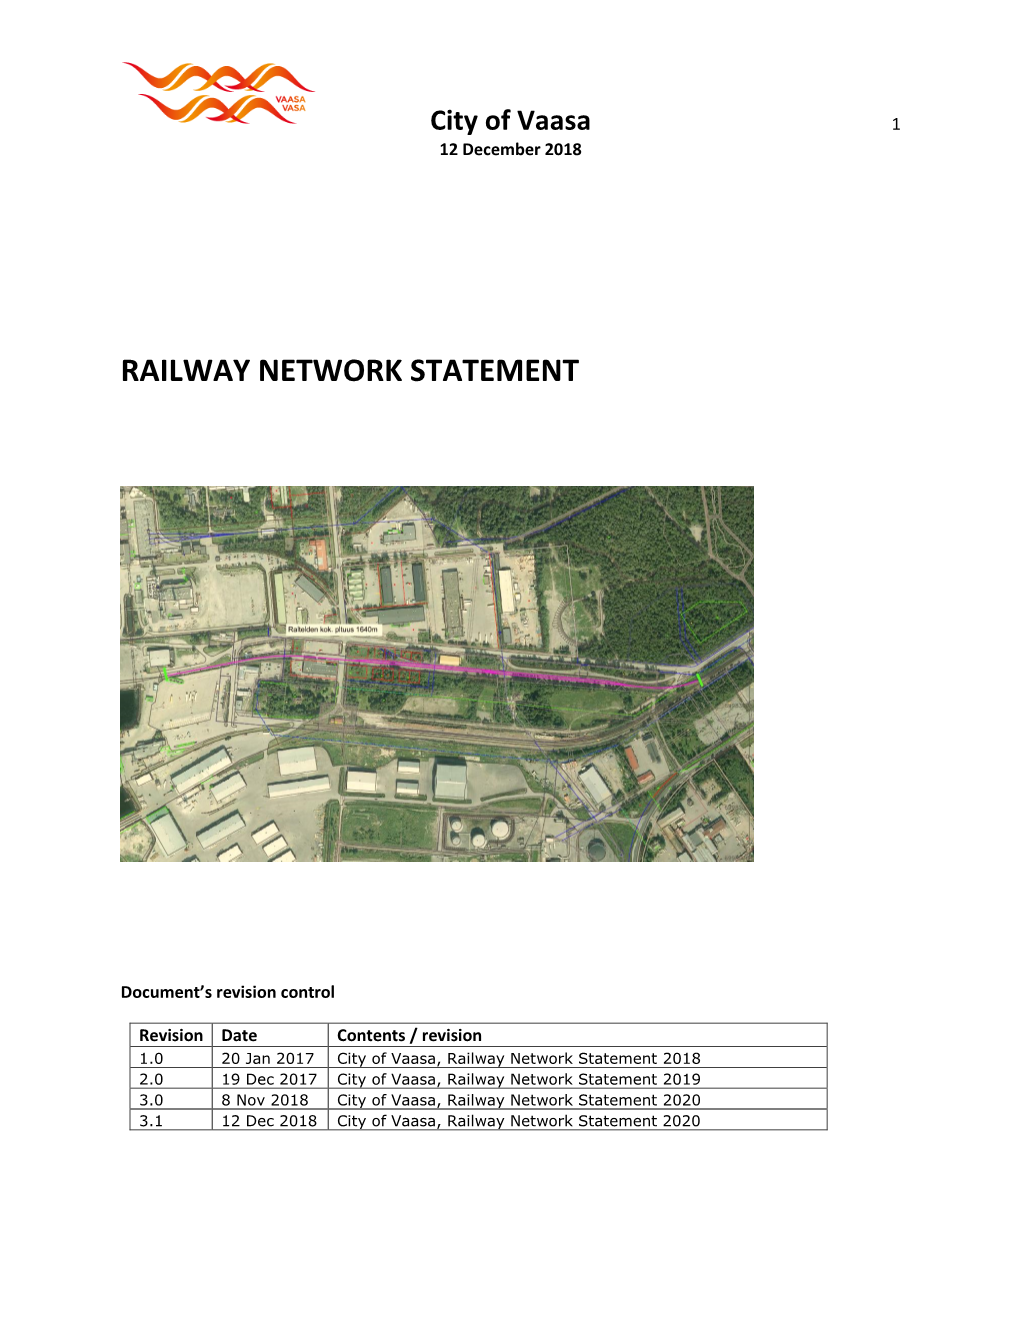 Railway Network Statement